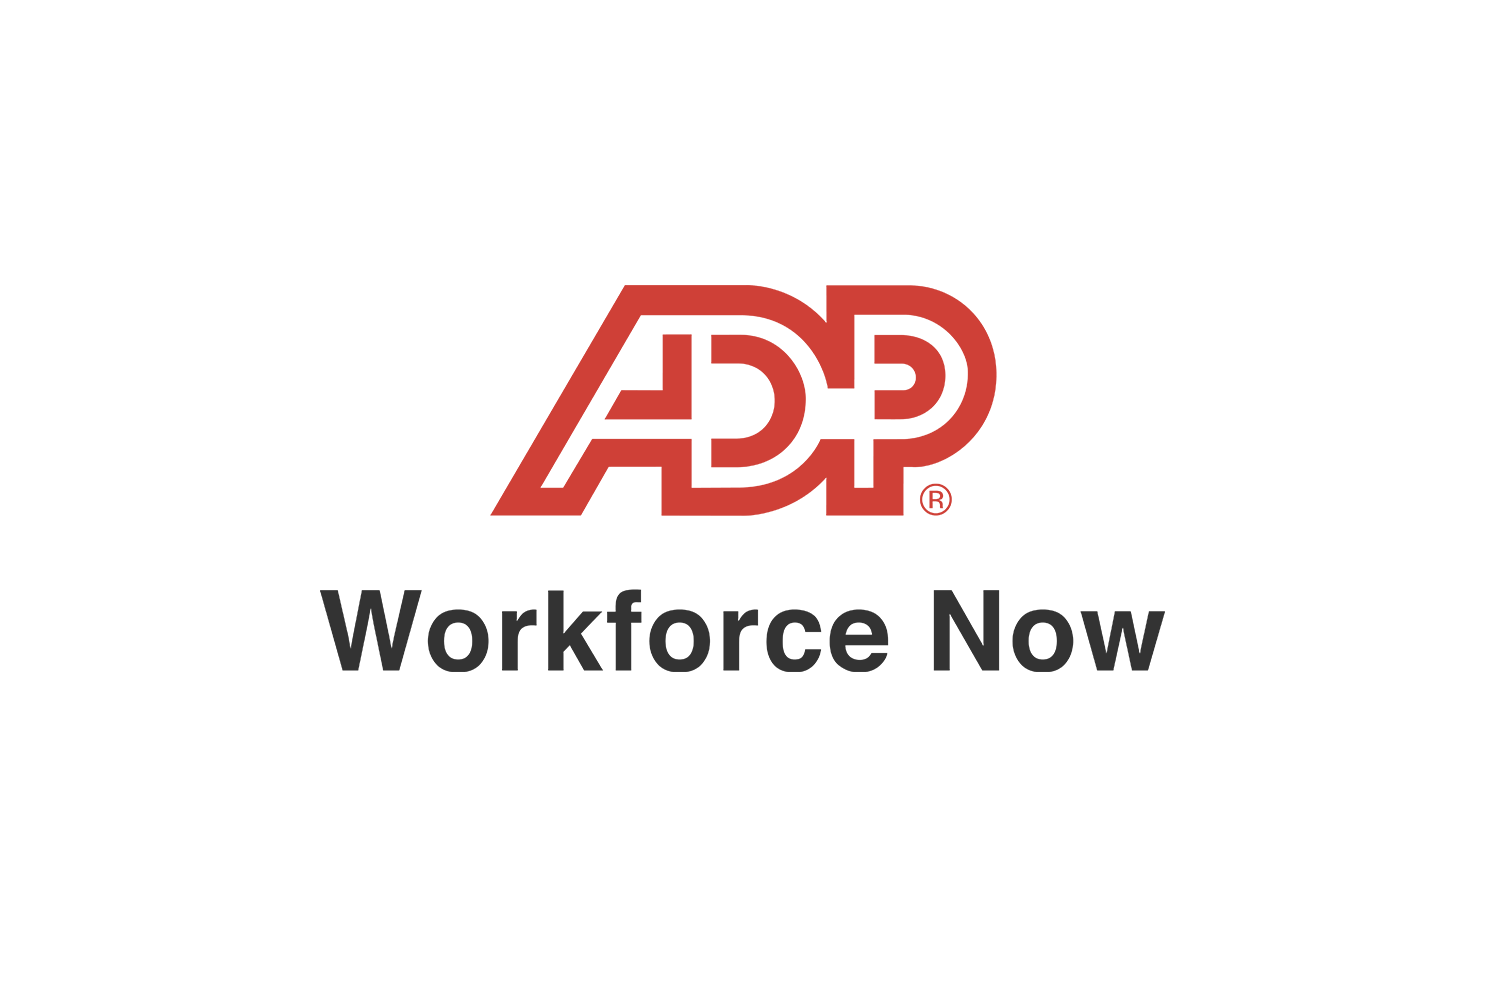 adp workforce now 